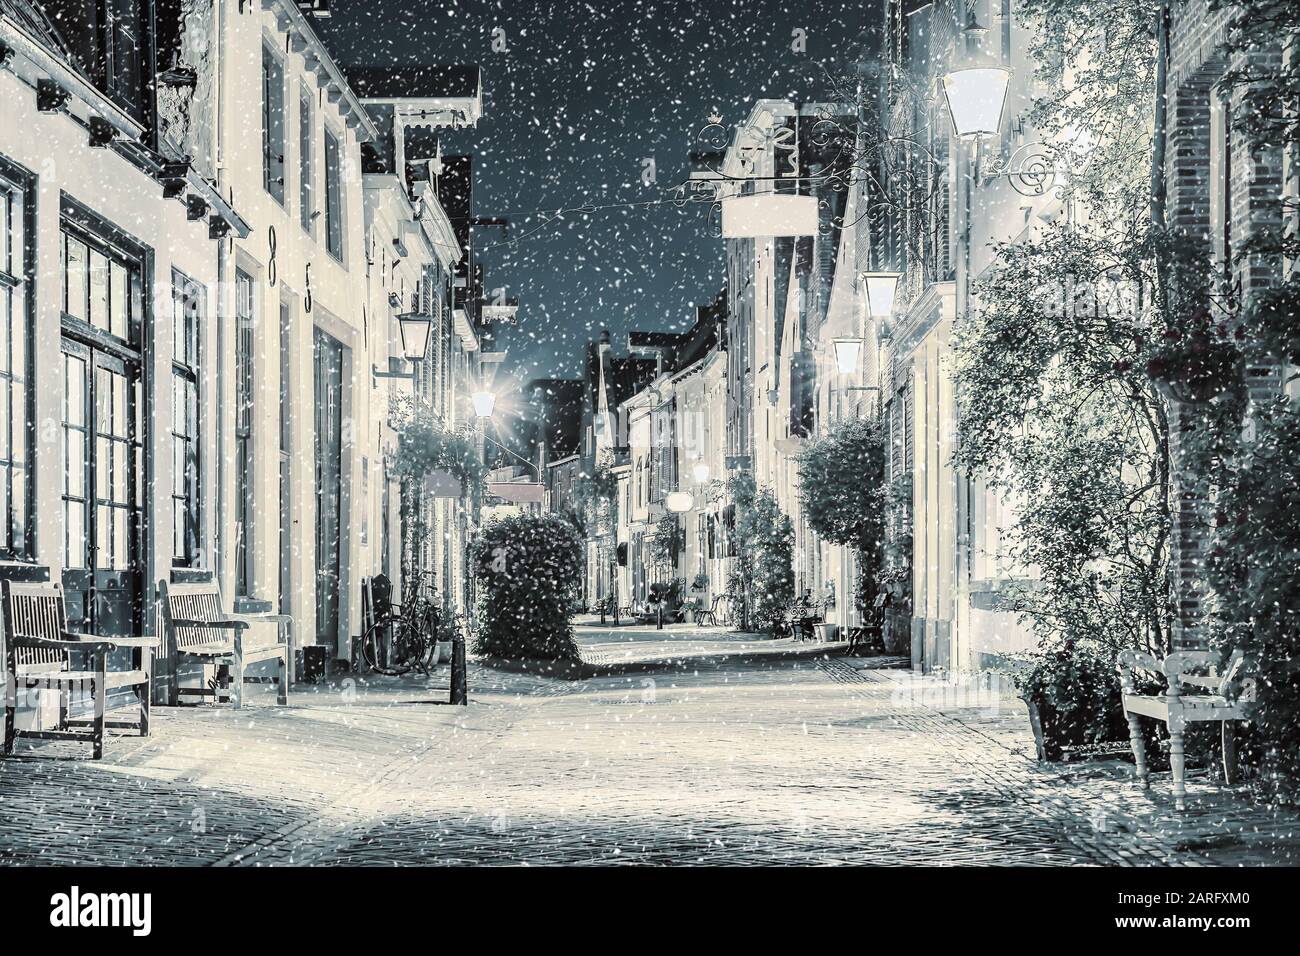 Die berühmte Einkaufsstraße Old Walstraat mit Schneefall im niederländischen Stadtzentrum von Deventer, Niederlande Stockfoto